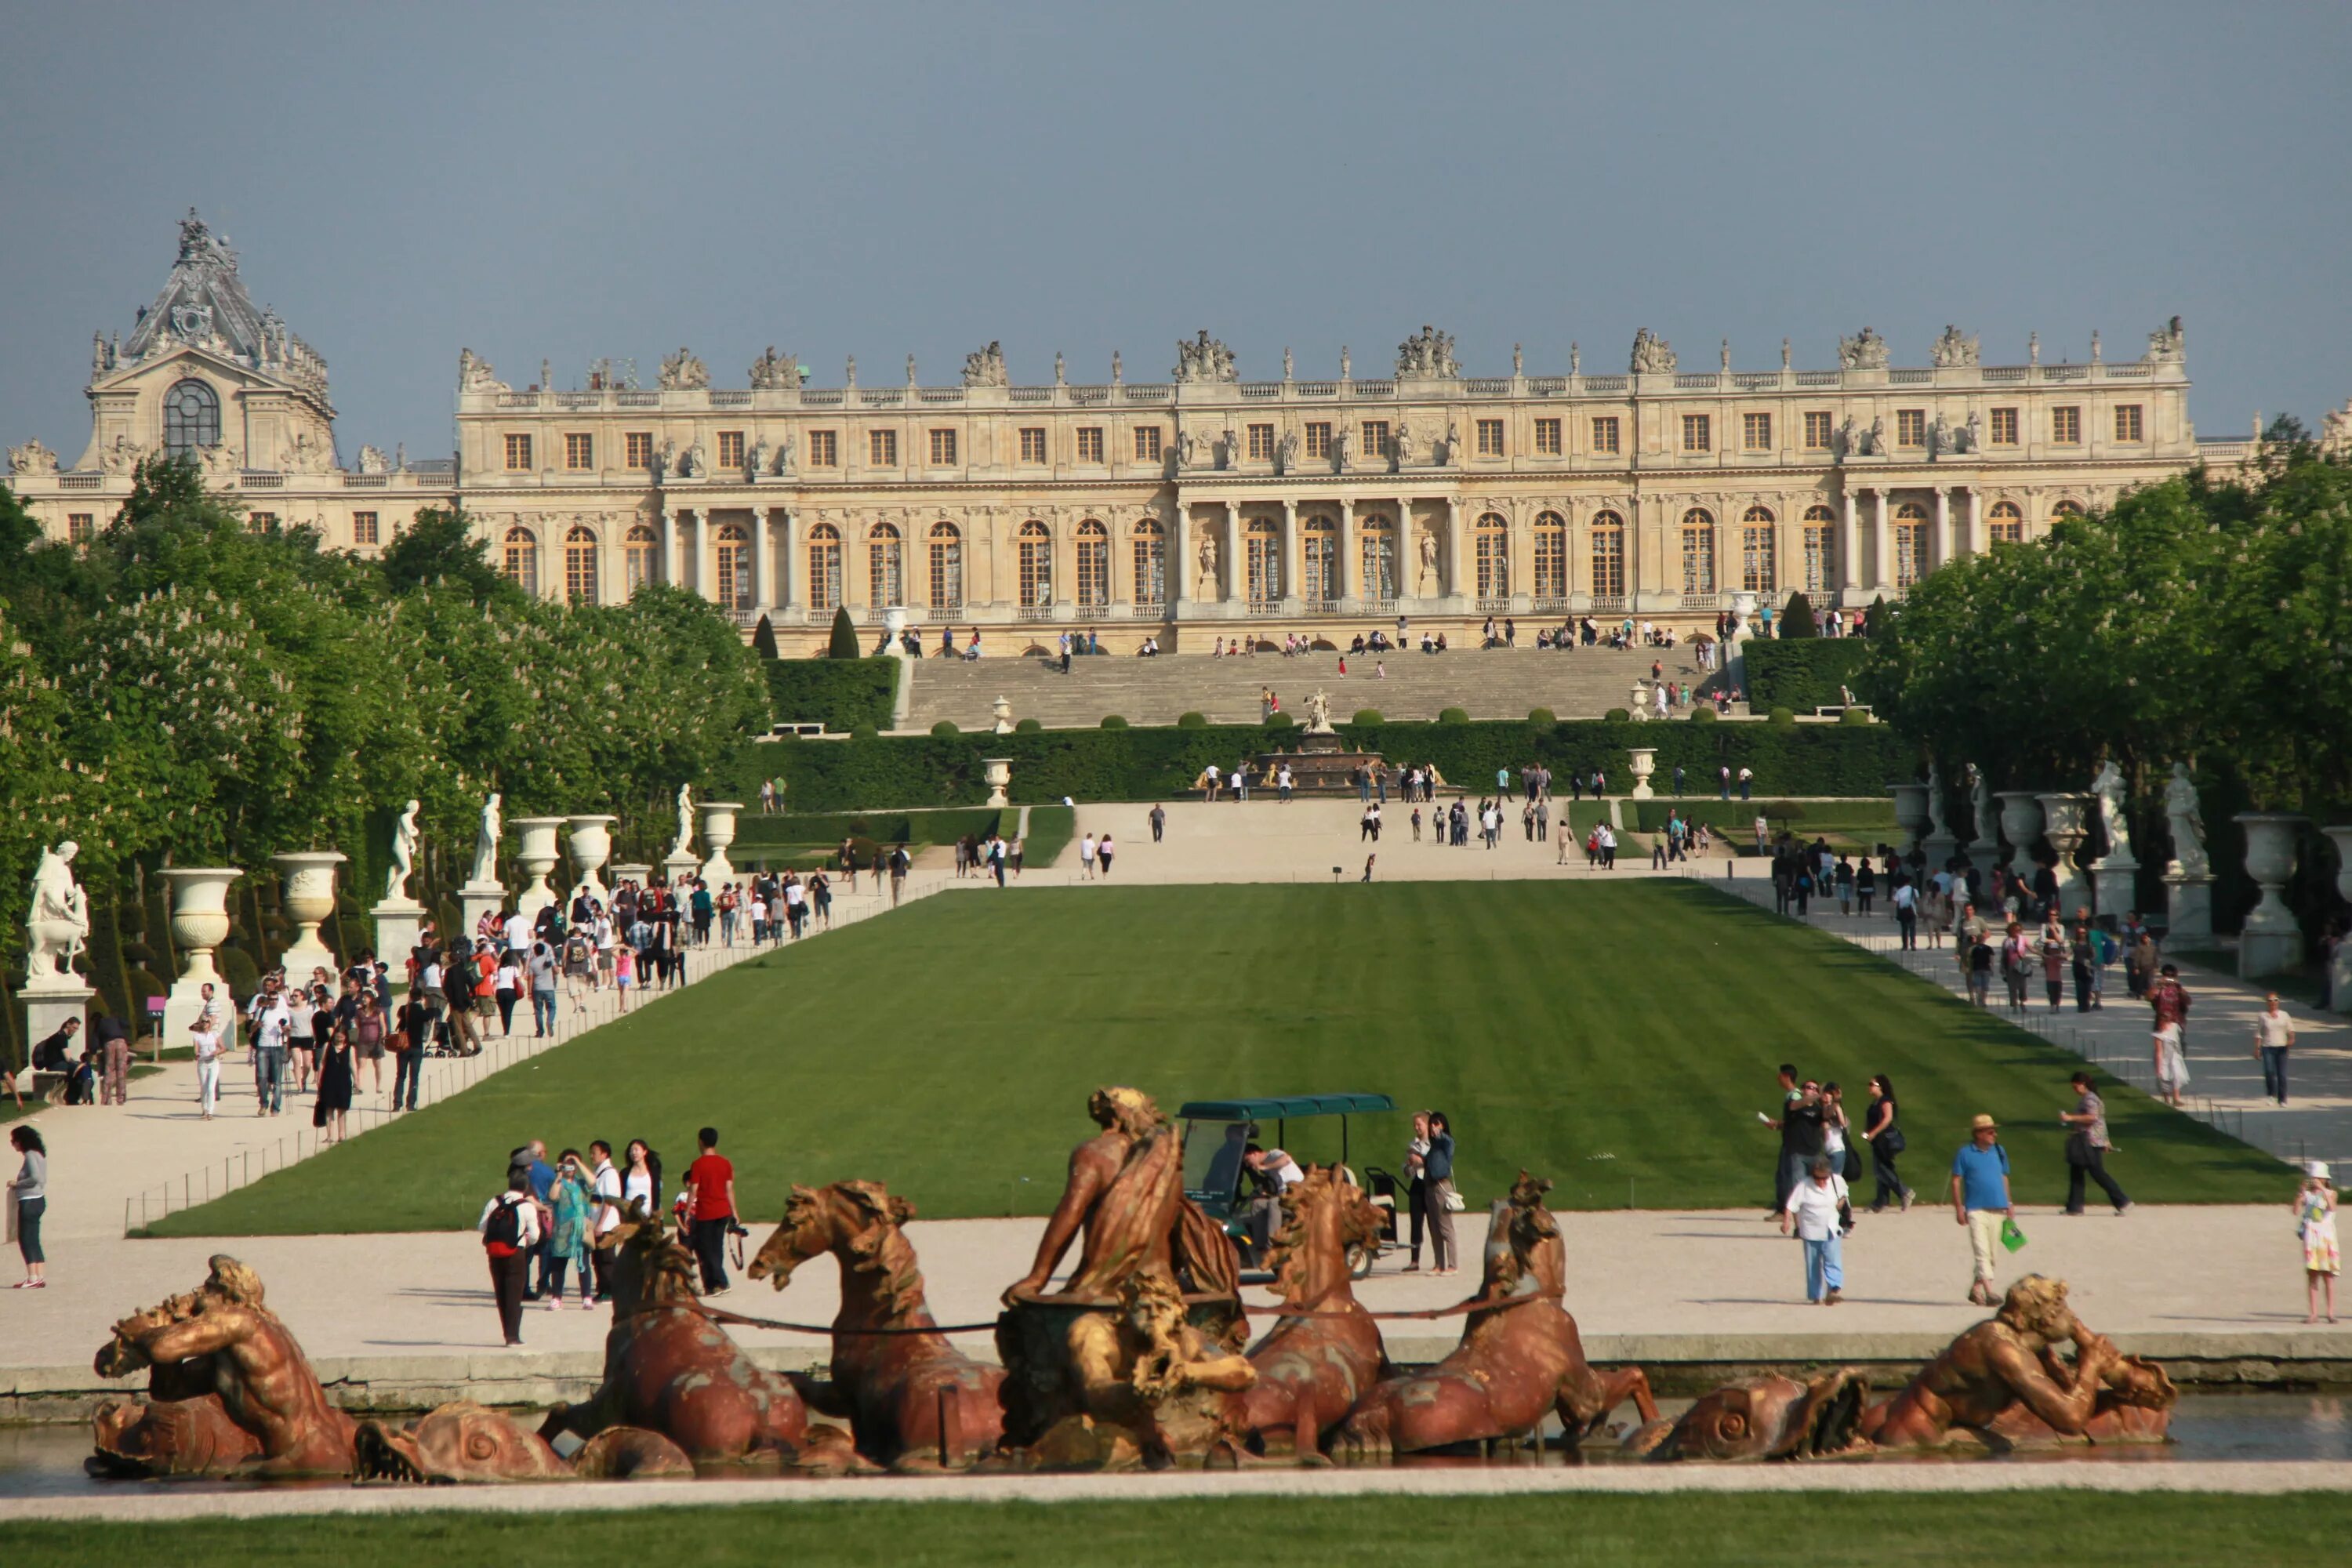 Chateau versailles. Версальский дворец дворцы Франции. Версальский дворец на французском. Дворец и парк в Версале. Шато Версальского дворца.